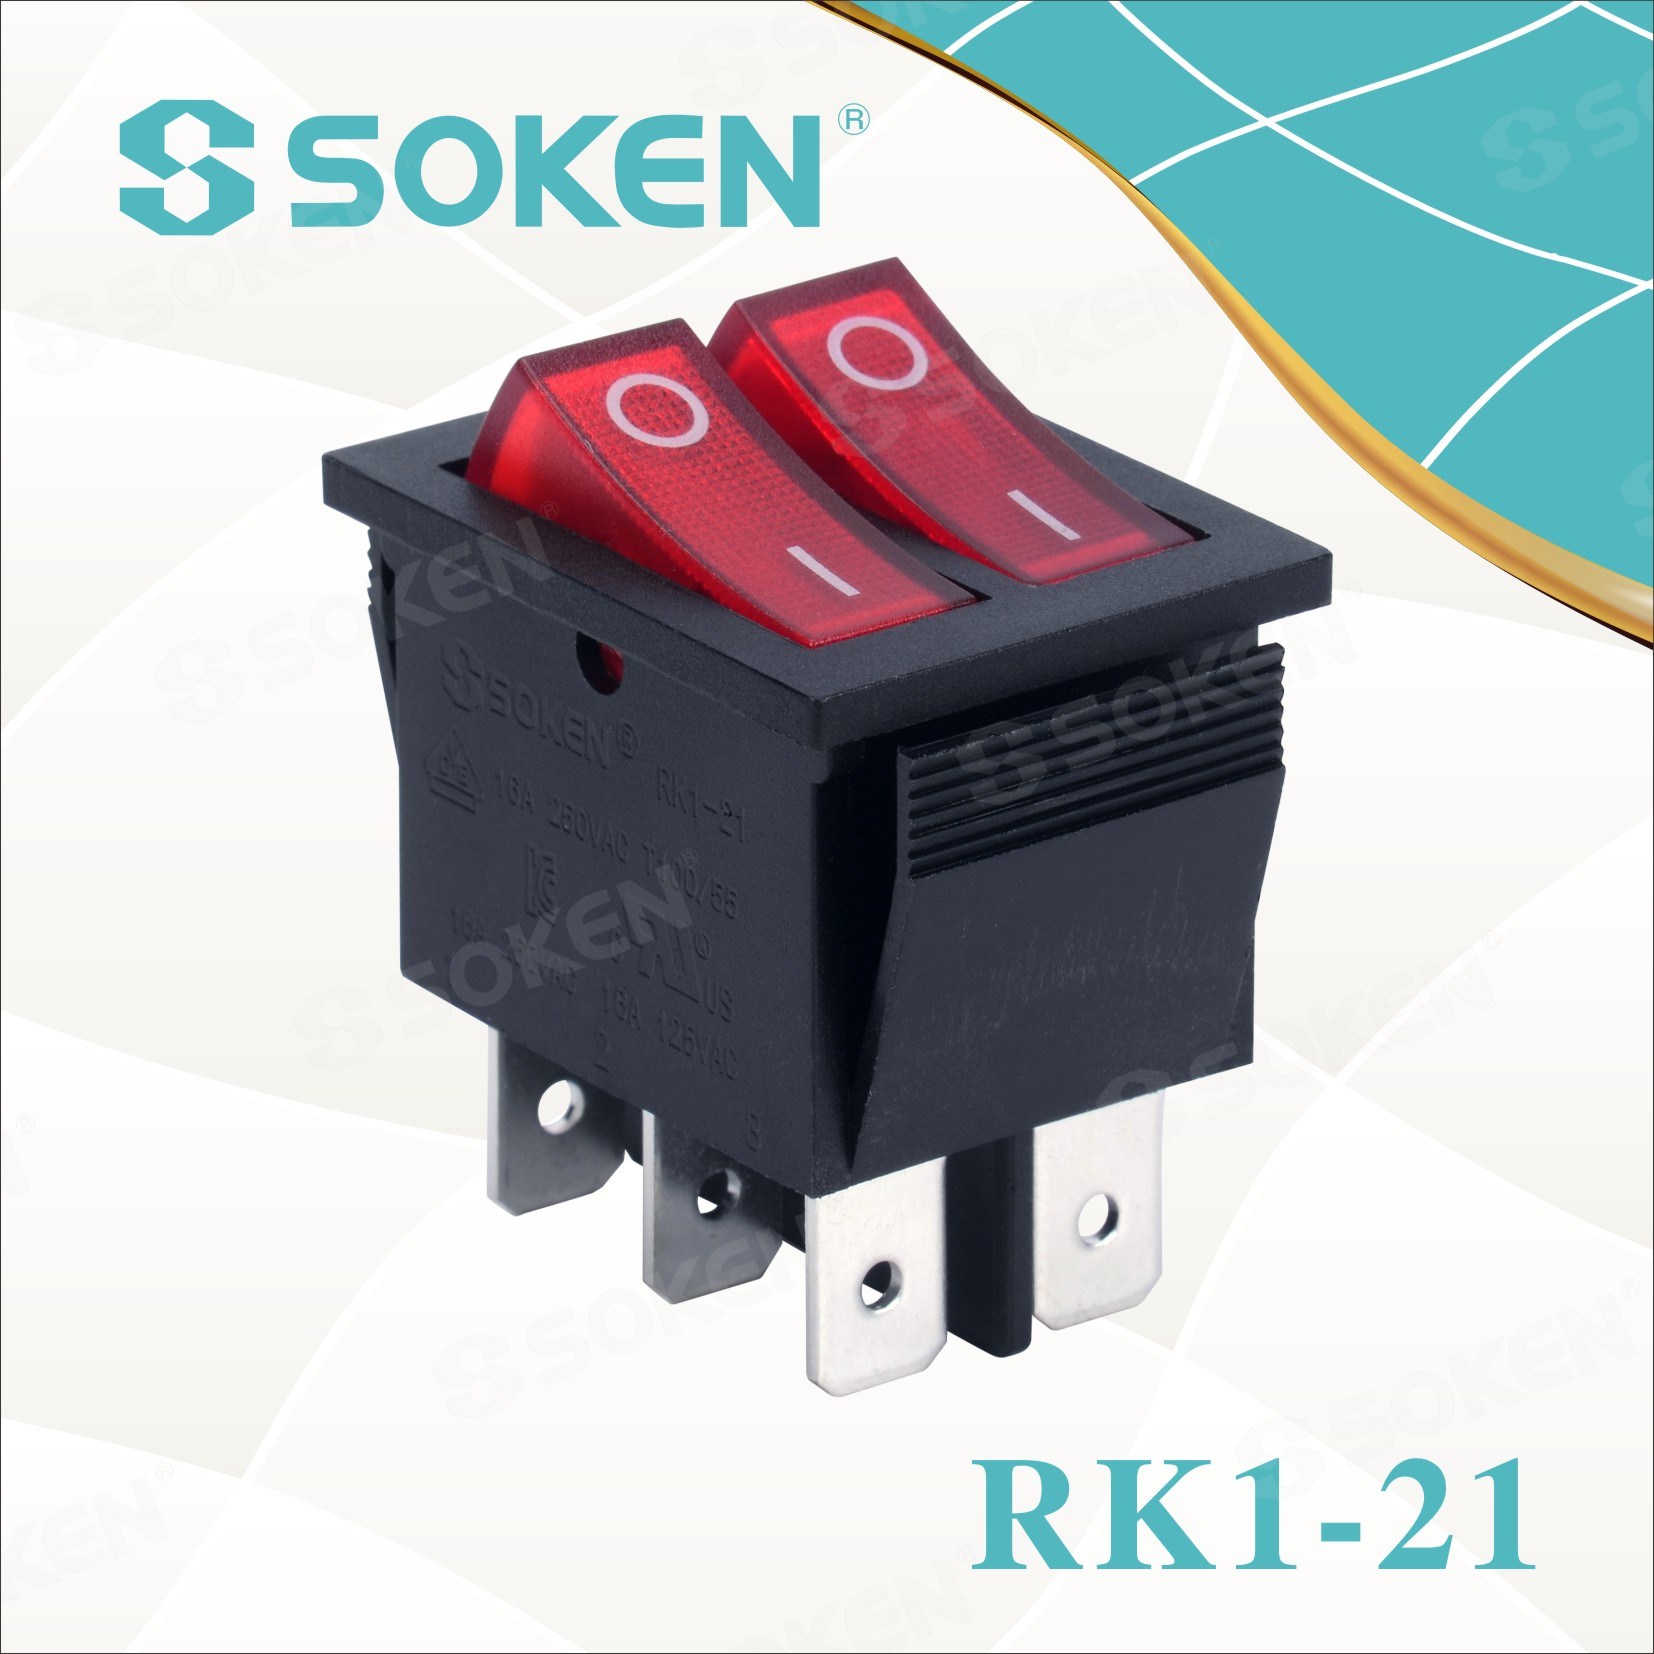 Soken Rk1-21 on off Illuminated Double Rocker Switch